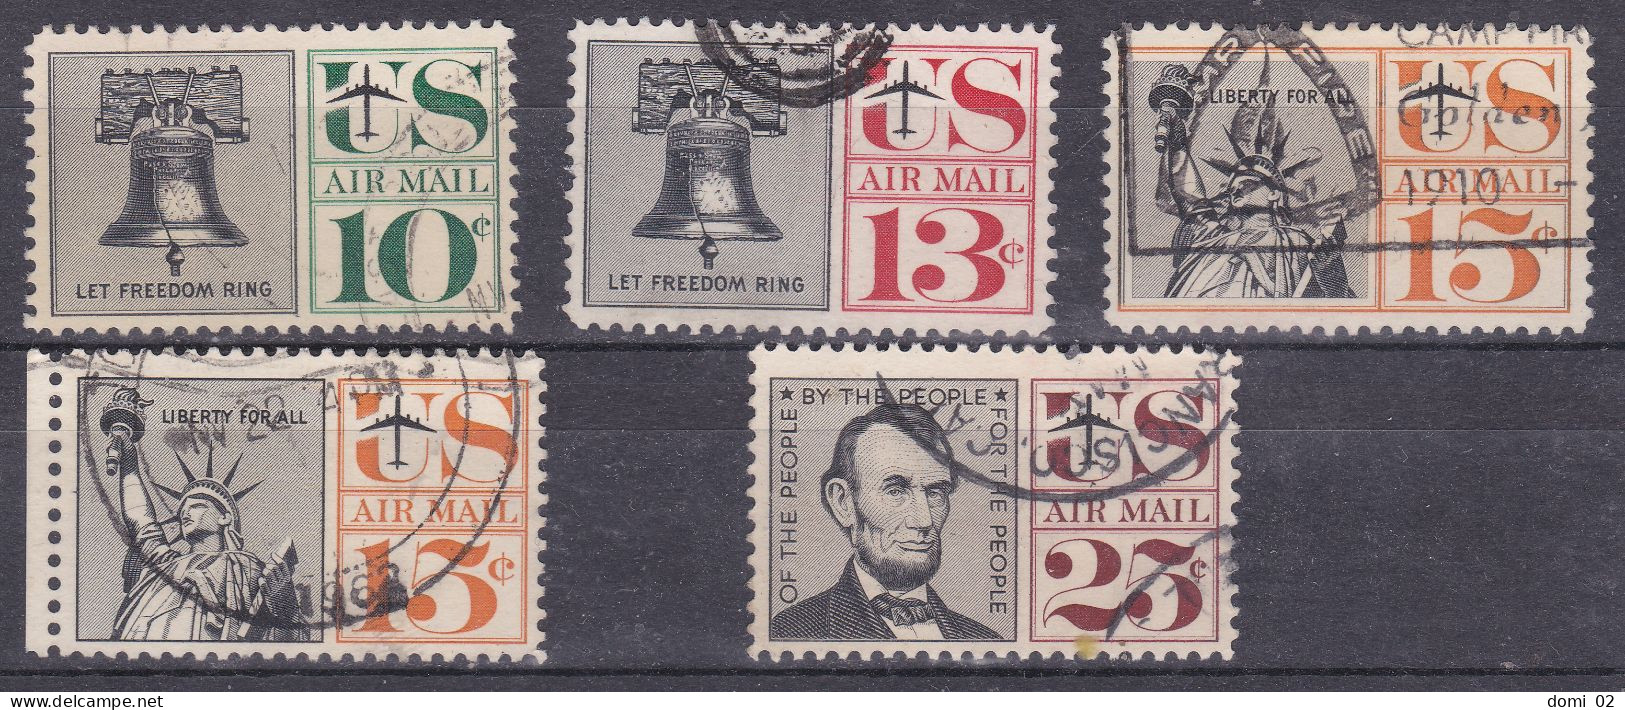 1959 N°56 A 60 - 2a. 1941-1960 Oblitérés